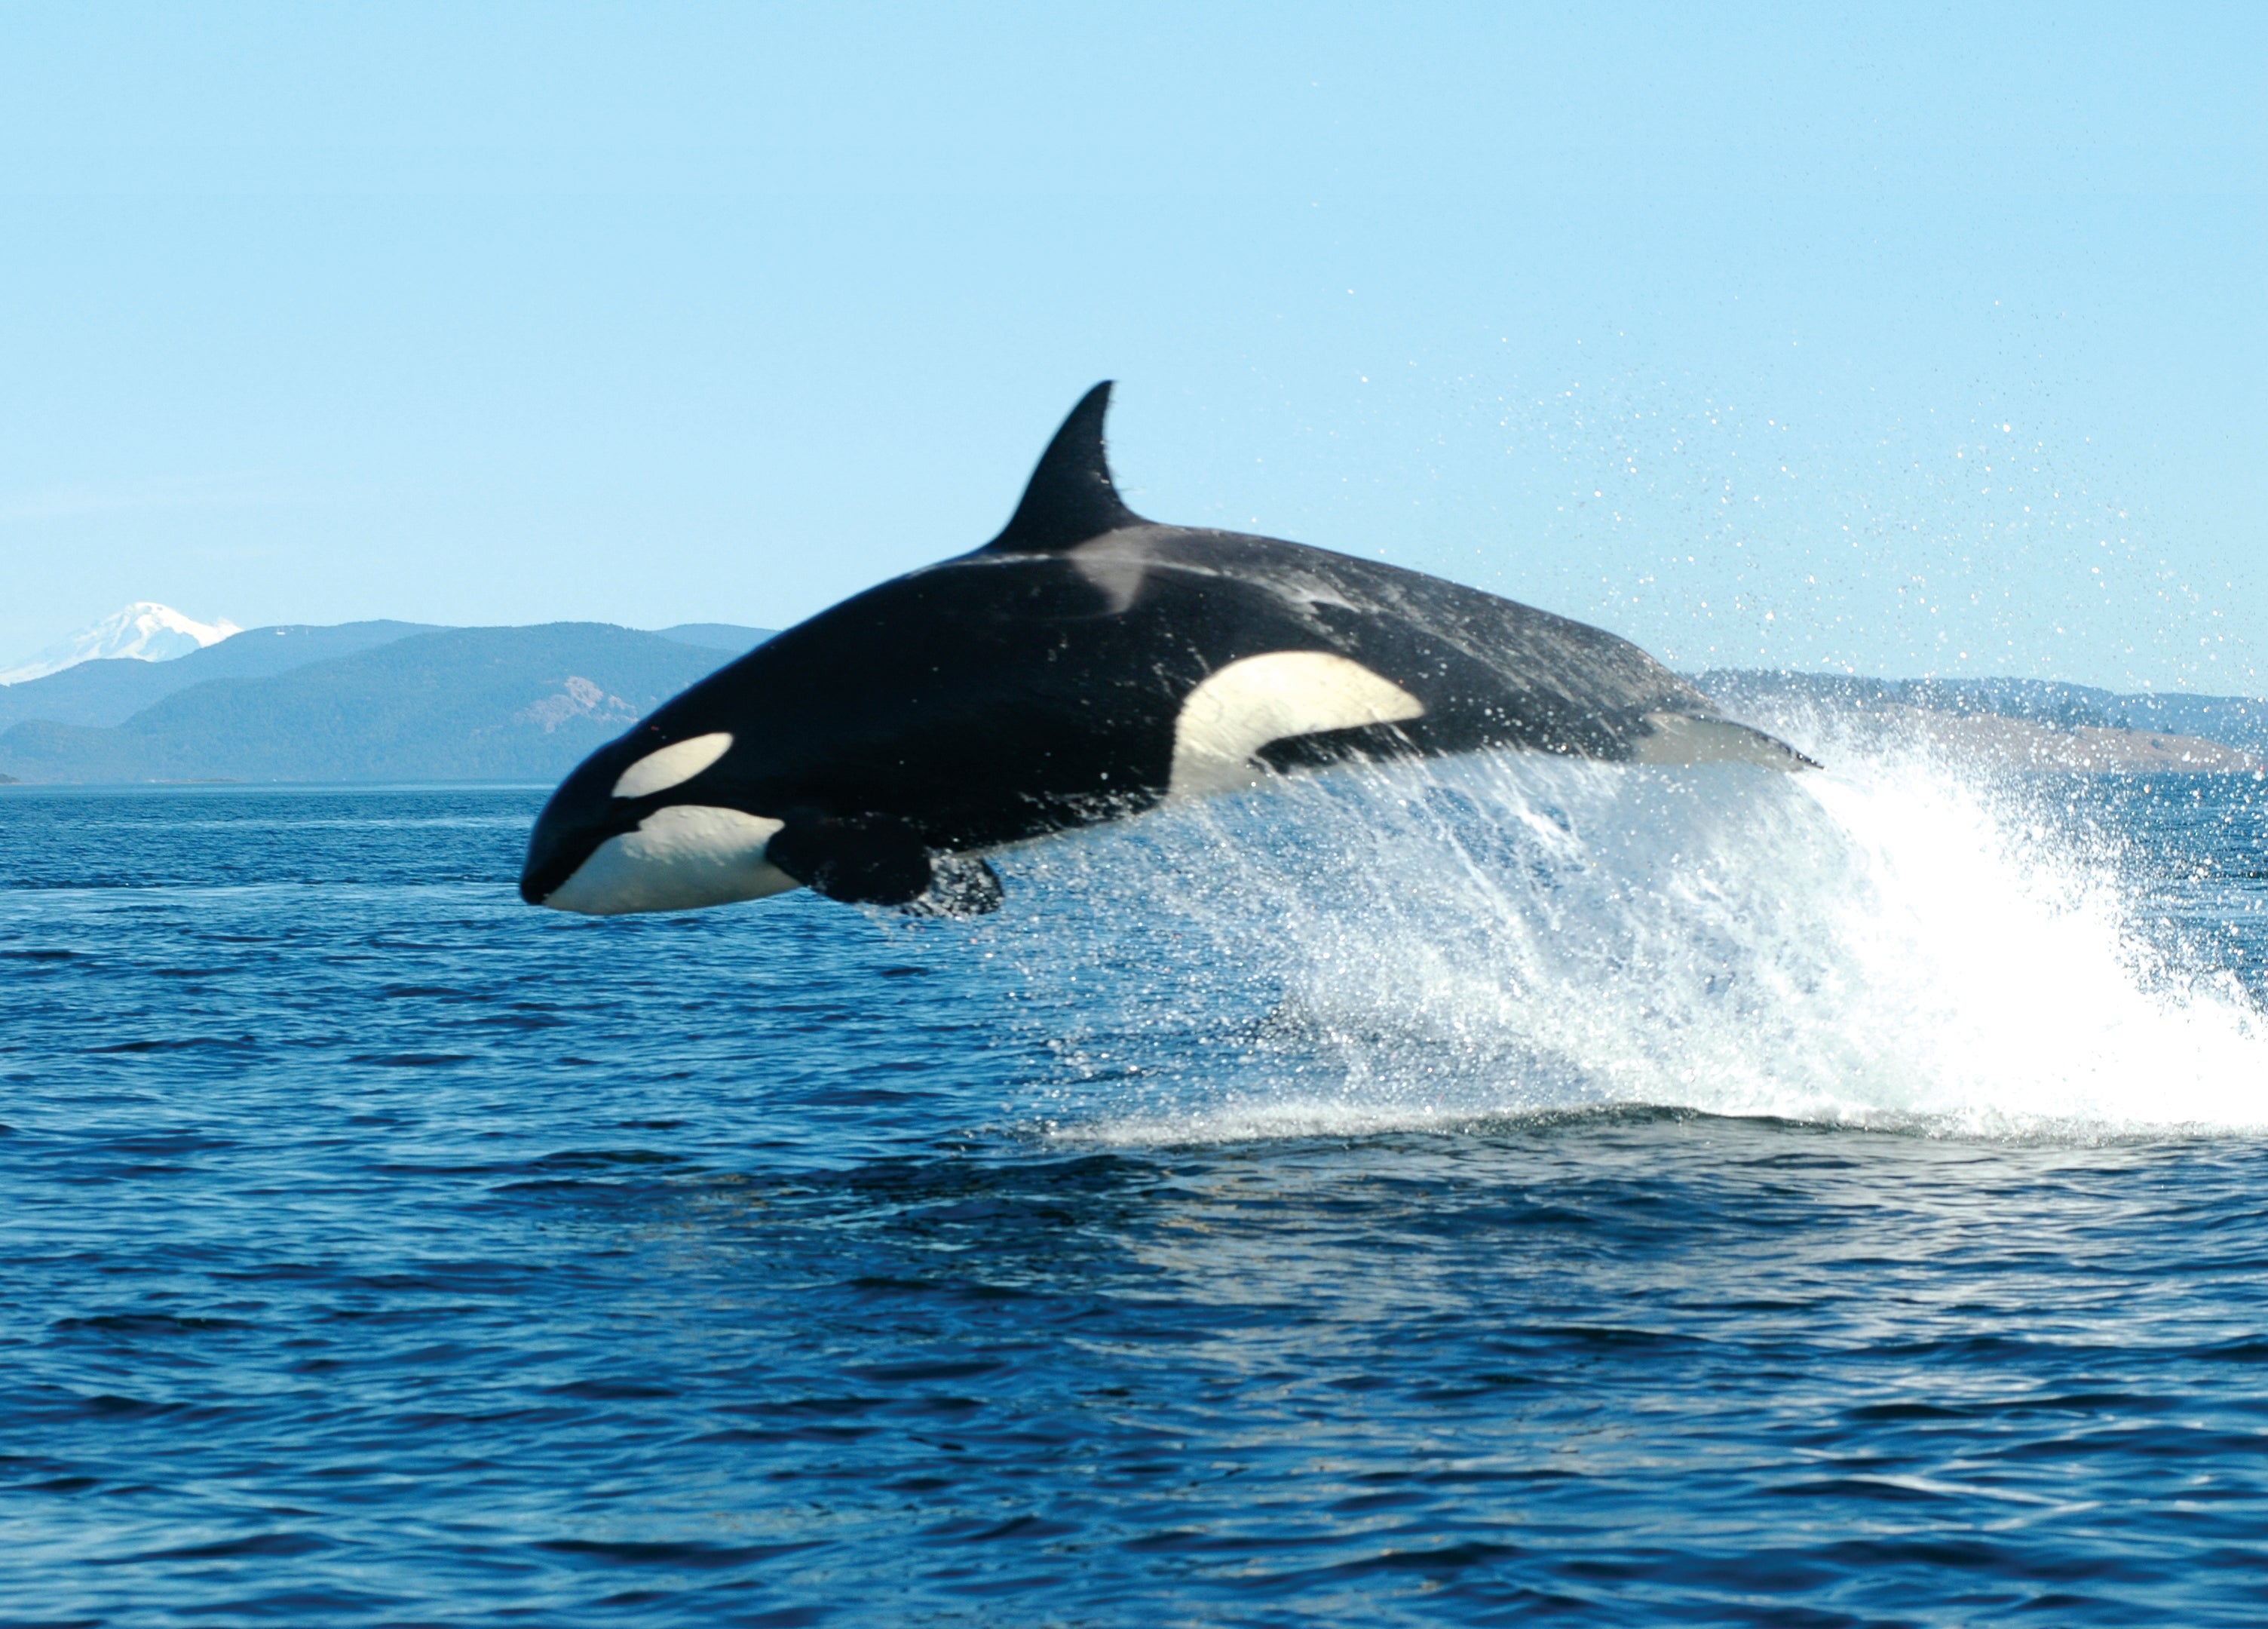 An orca breaching